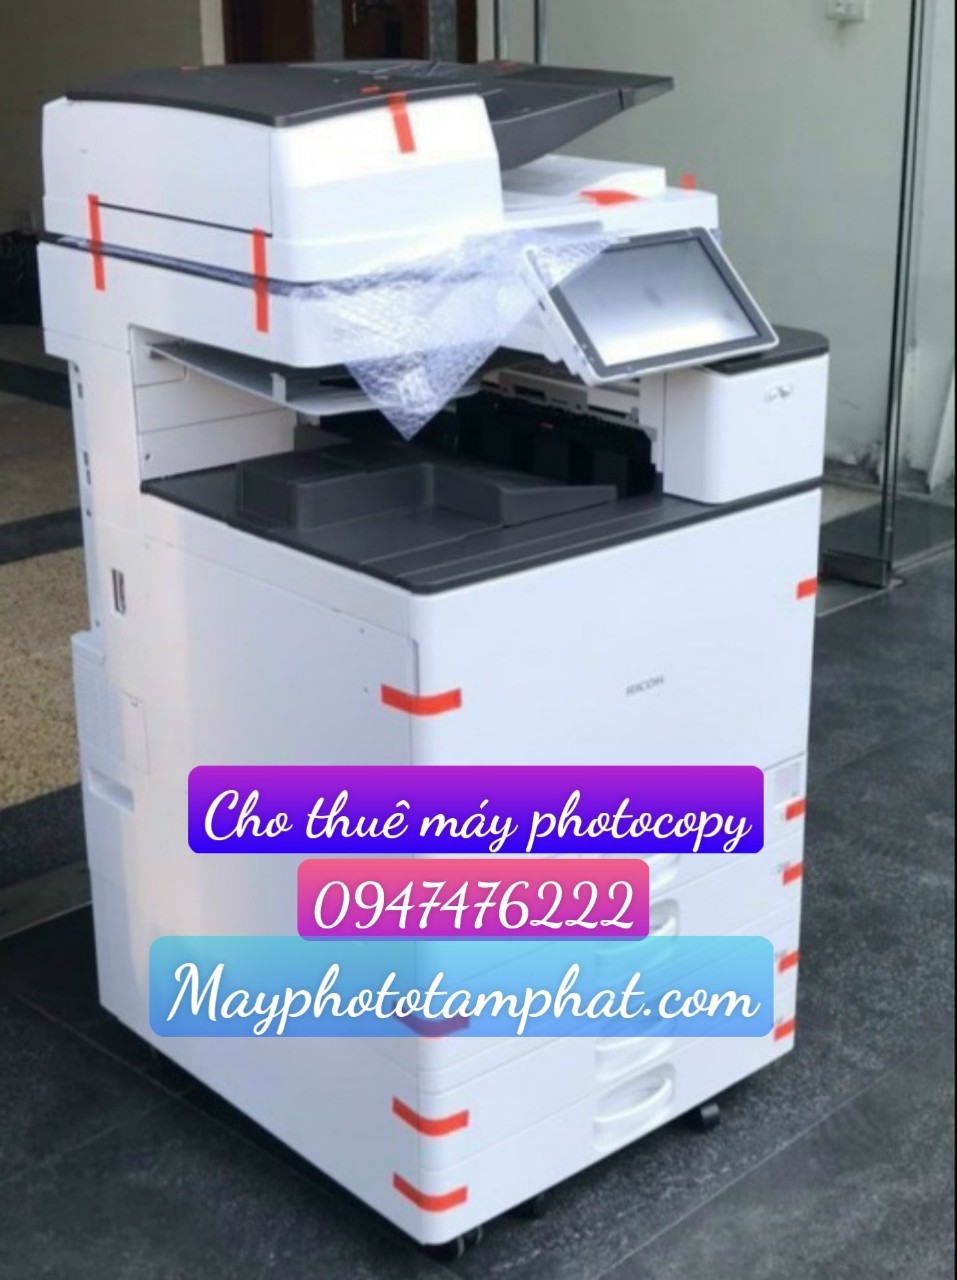 Cho thuê máy photocopy giá rẻ tại Hà Nội - 0947476222